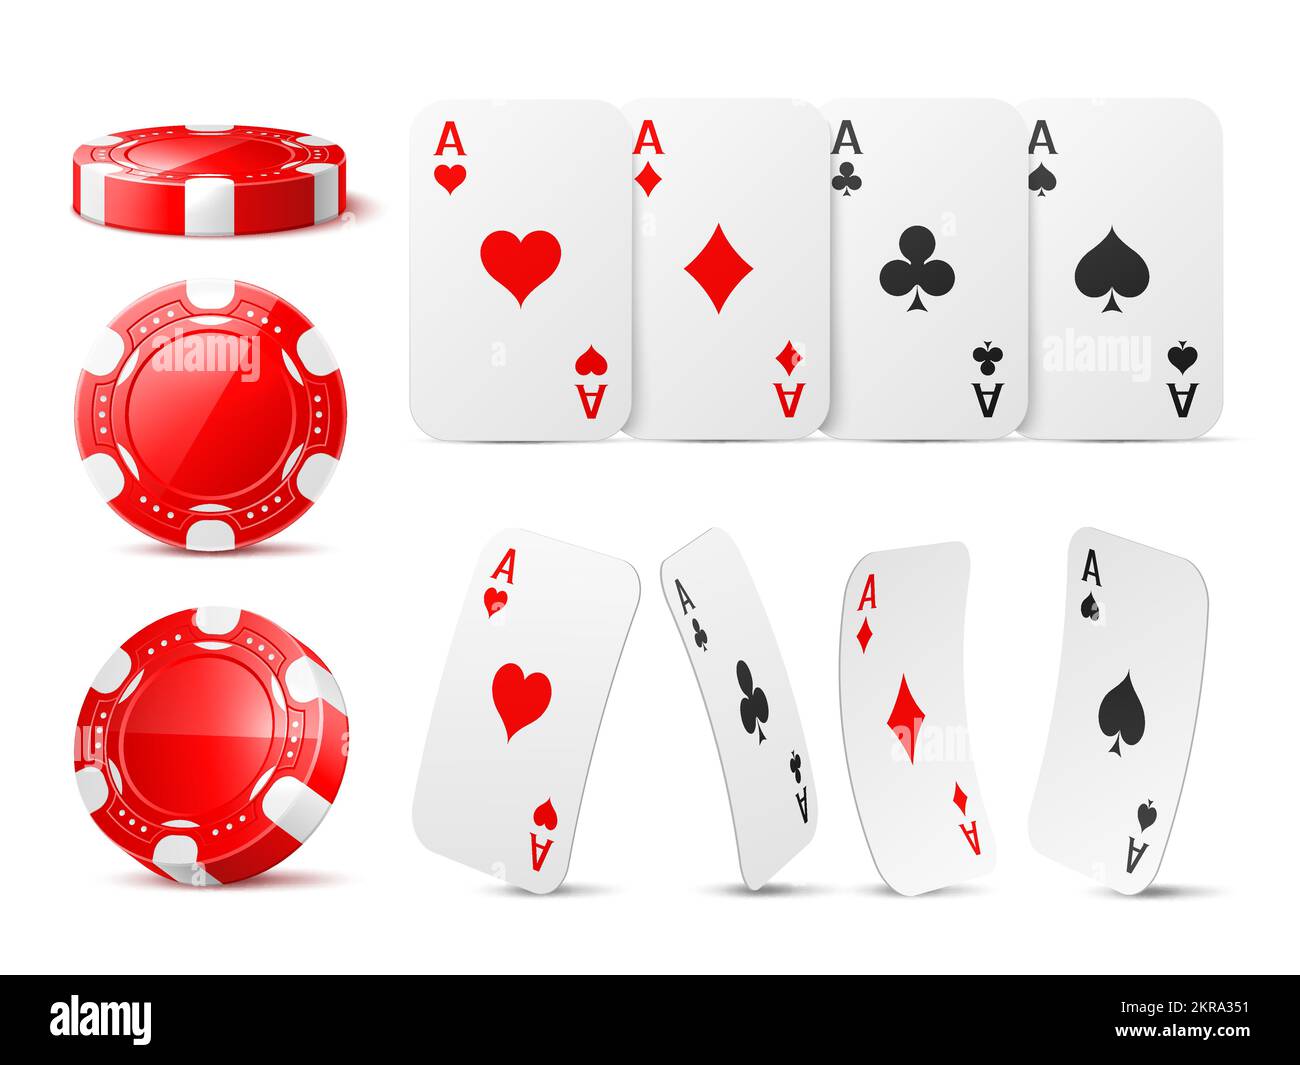 Chip e assi realistici del casinò. Gettoni di gioco rossi e carte da gioco, tute diverse, angolo di visione vario, gioco d'azzardo di poker, cuori di assi e picche Illustrazione Vettoriale